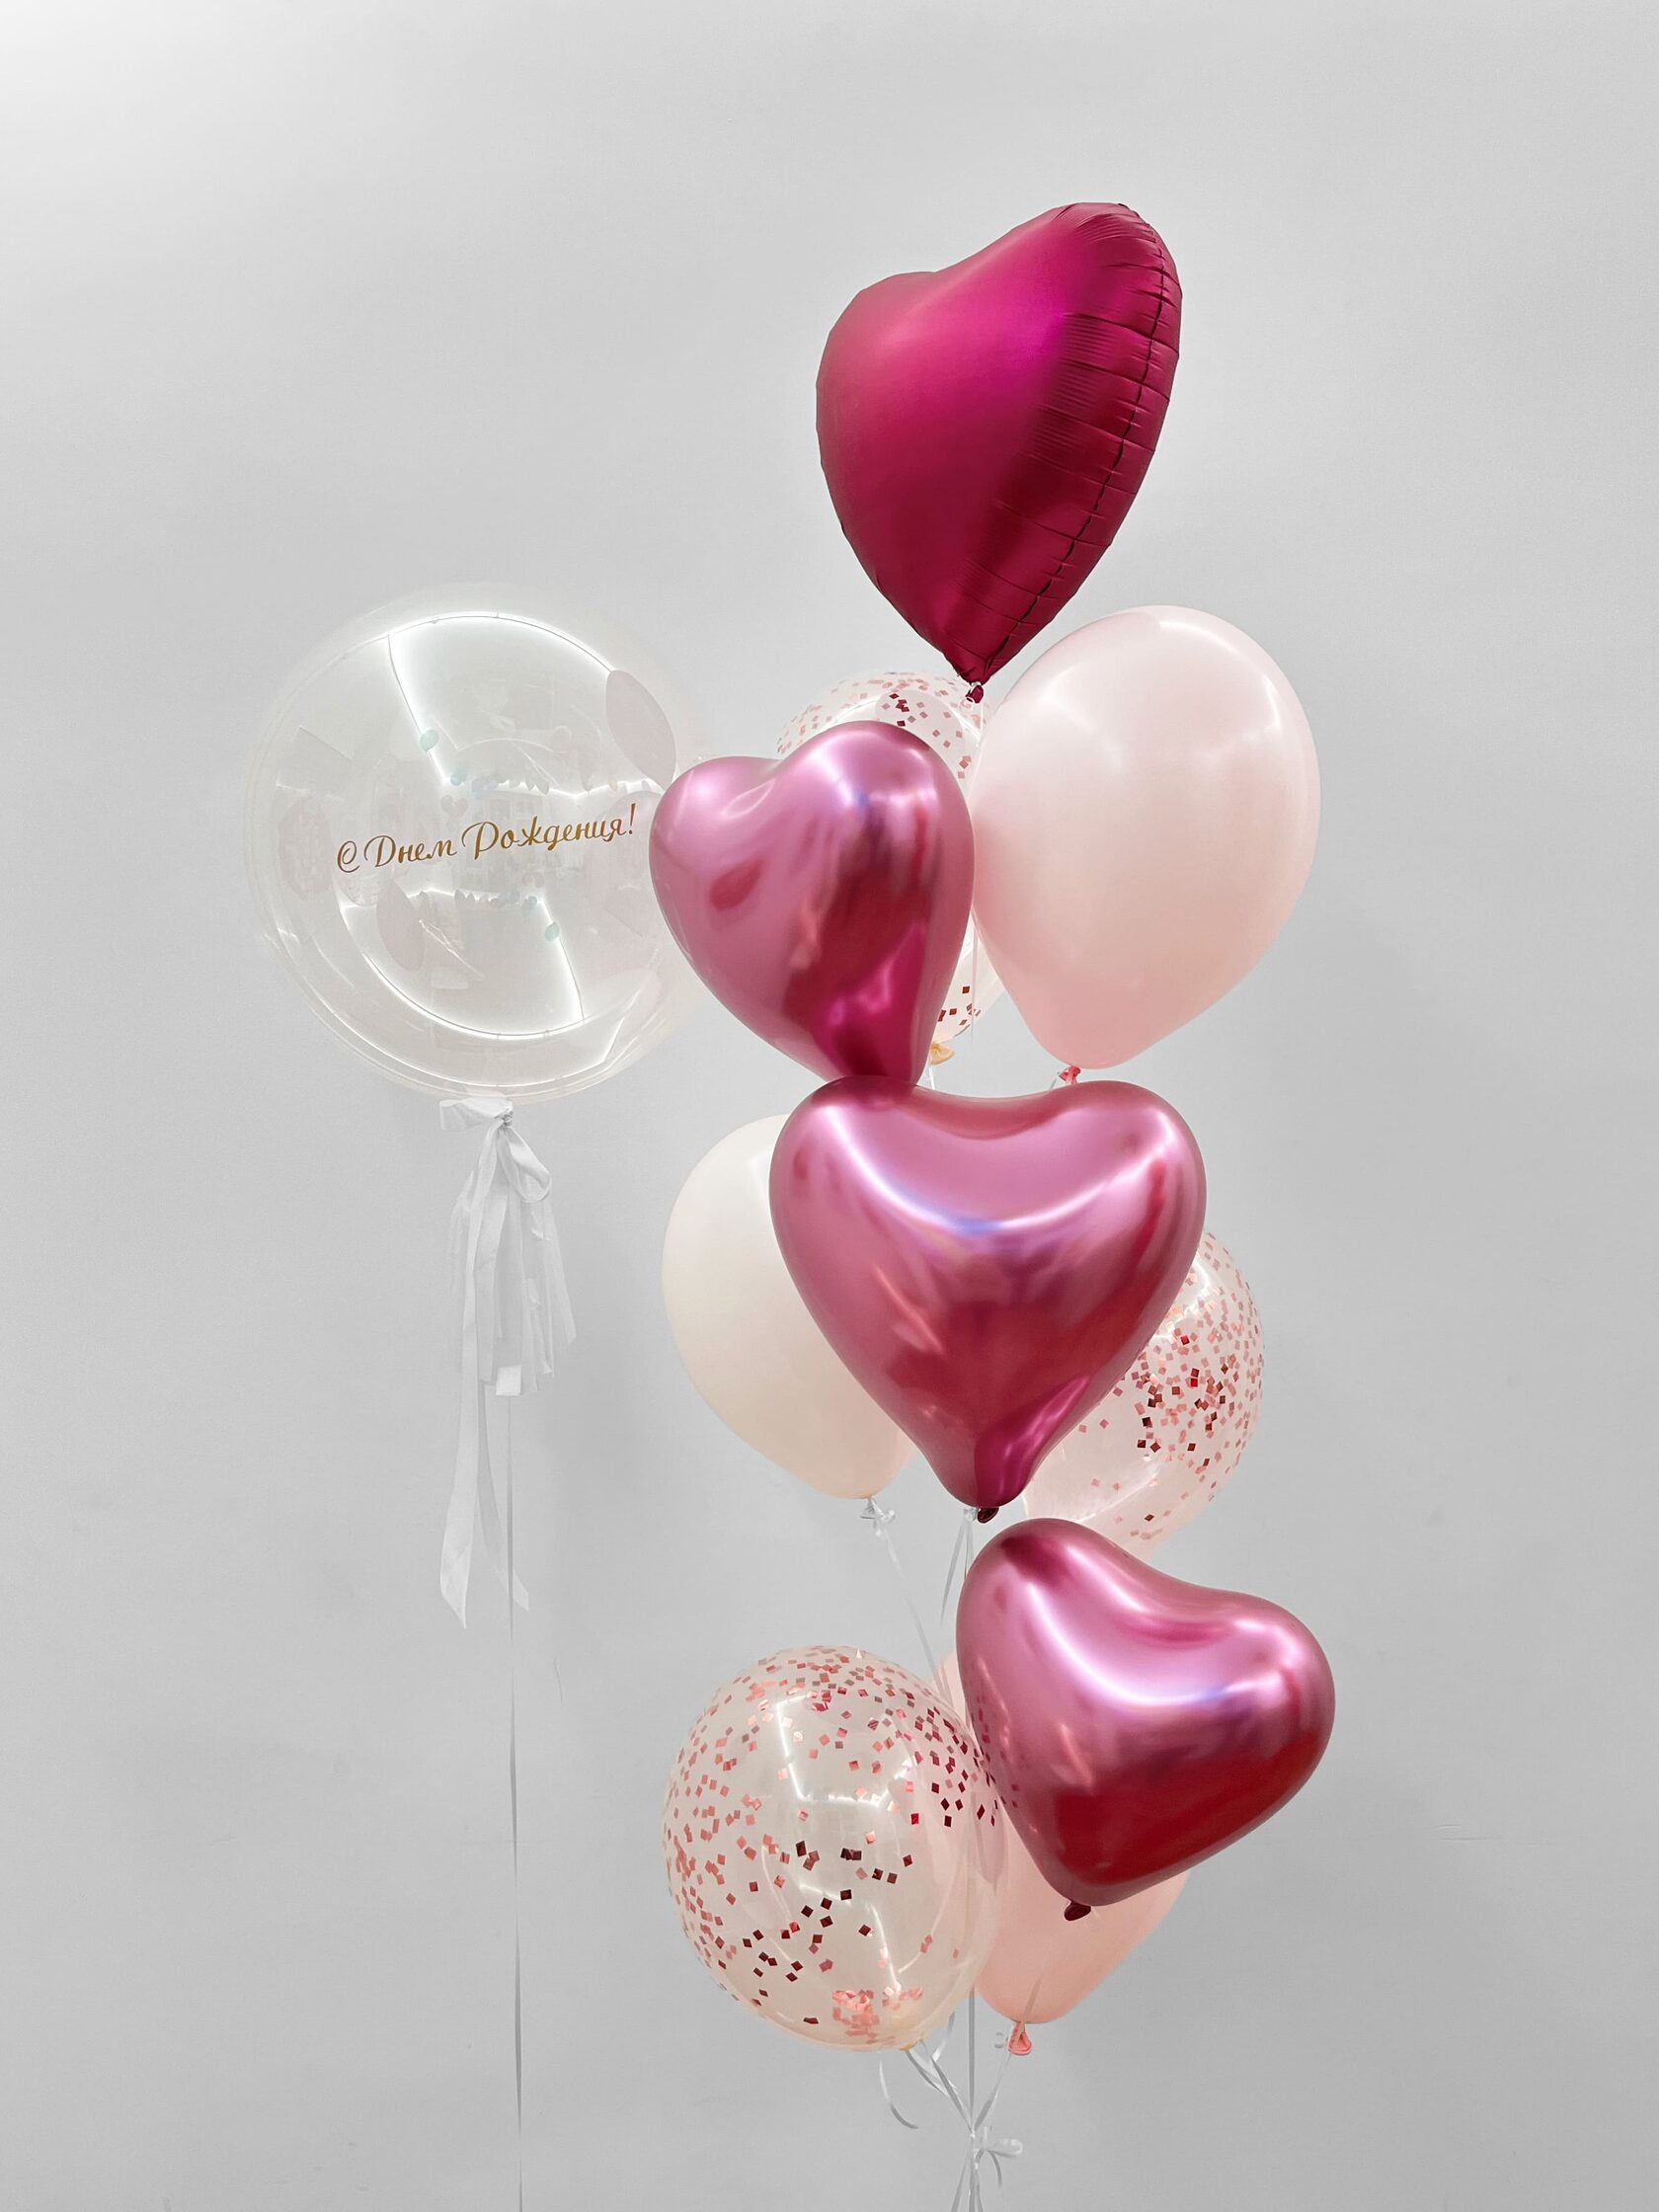 фонтан из воздушных шаров диплодок Фонтан из шаров «Малиновое сияние» - 10 шаров + шар Bubbles (сфера) - розовое конфетти